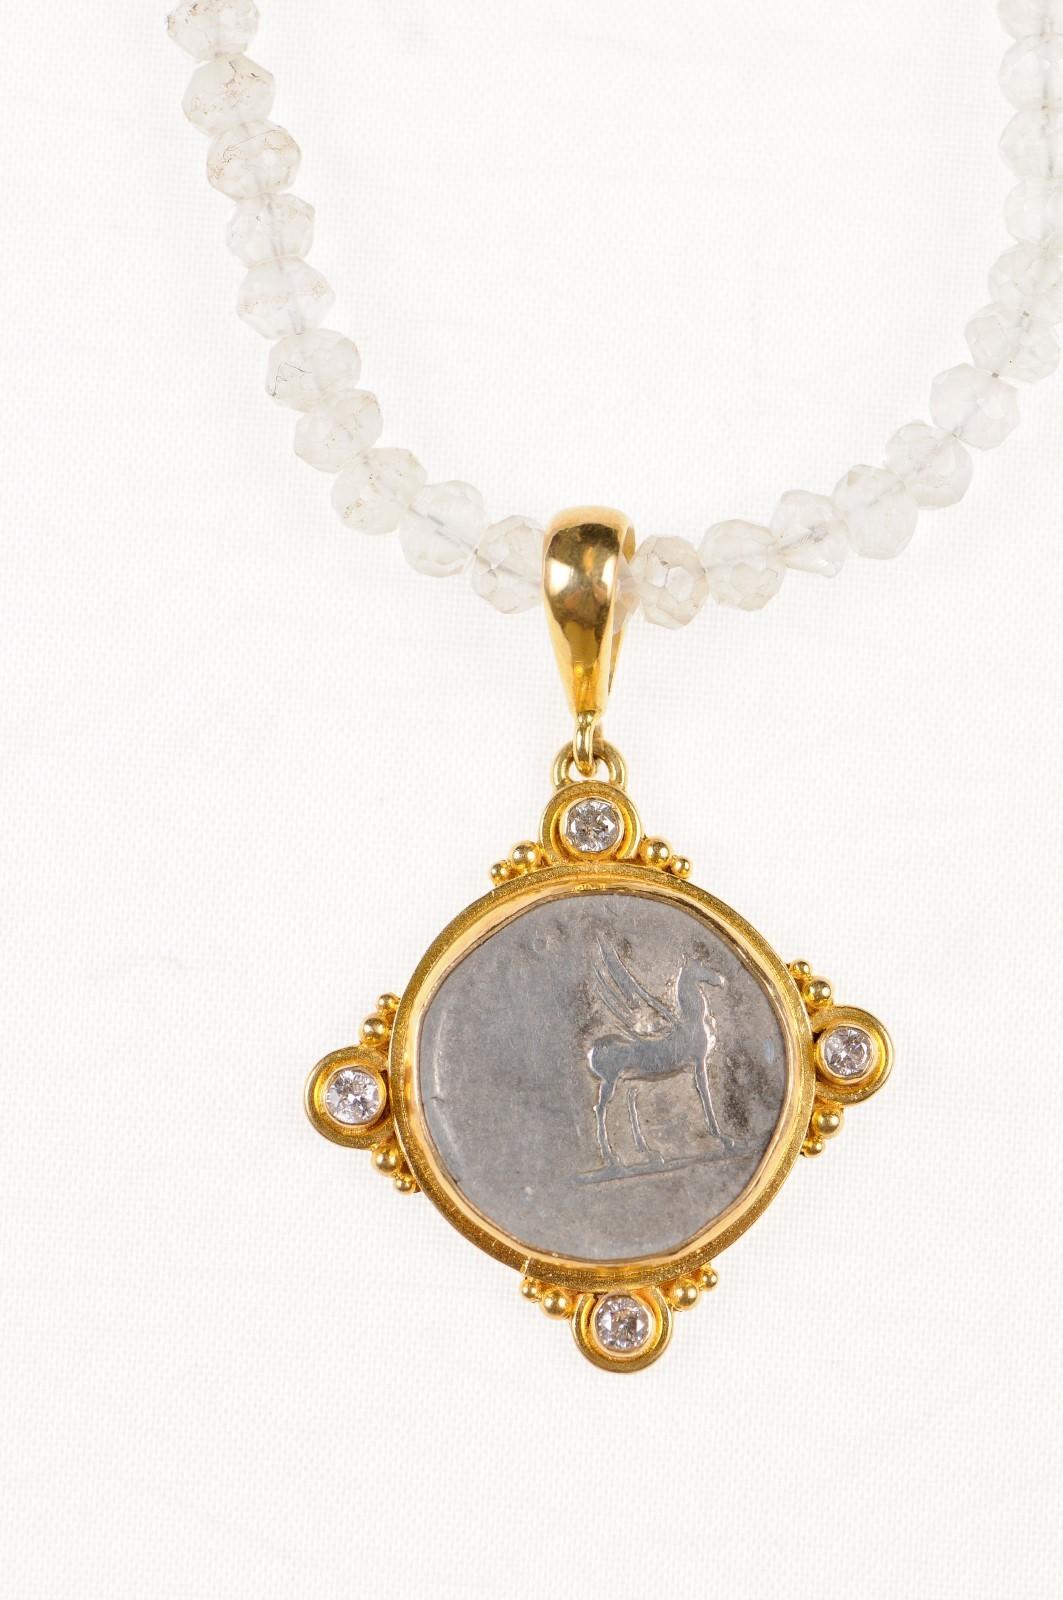 Ein authentisches Römisches Reich, Domitian (ca. 81-96 n. Chr.), Silber-Denarius-Münze, in Rom geprägt, in einem benutzerdefinierten 22k Gold Lünette mit 22k Gold Bügel mit Gold Perle und Diamanten Akzente an vier Punkten gesetzt. Die Vorderseite